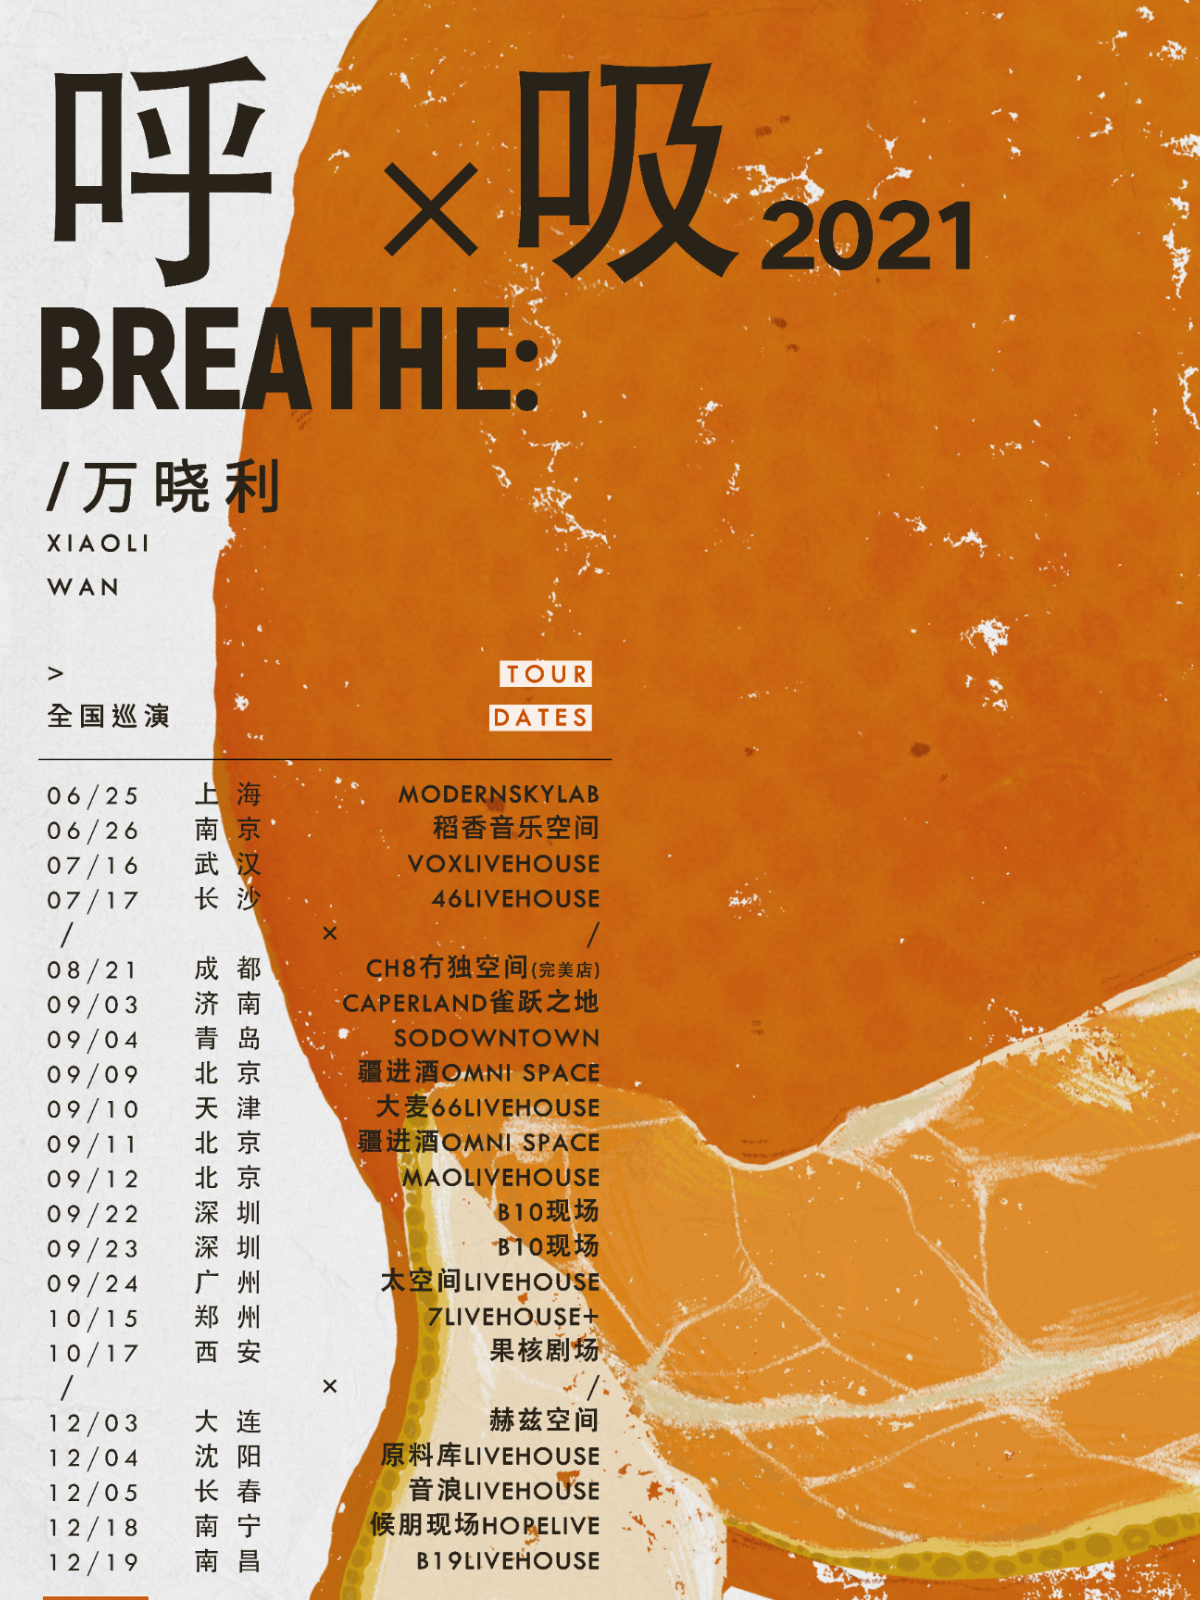 万晓利「呼吸」2021全国巡演郑州站